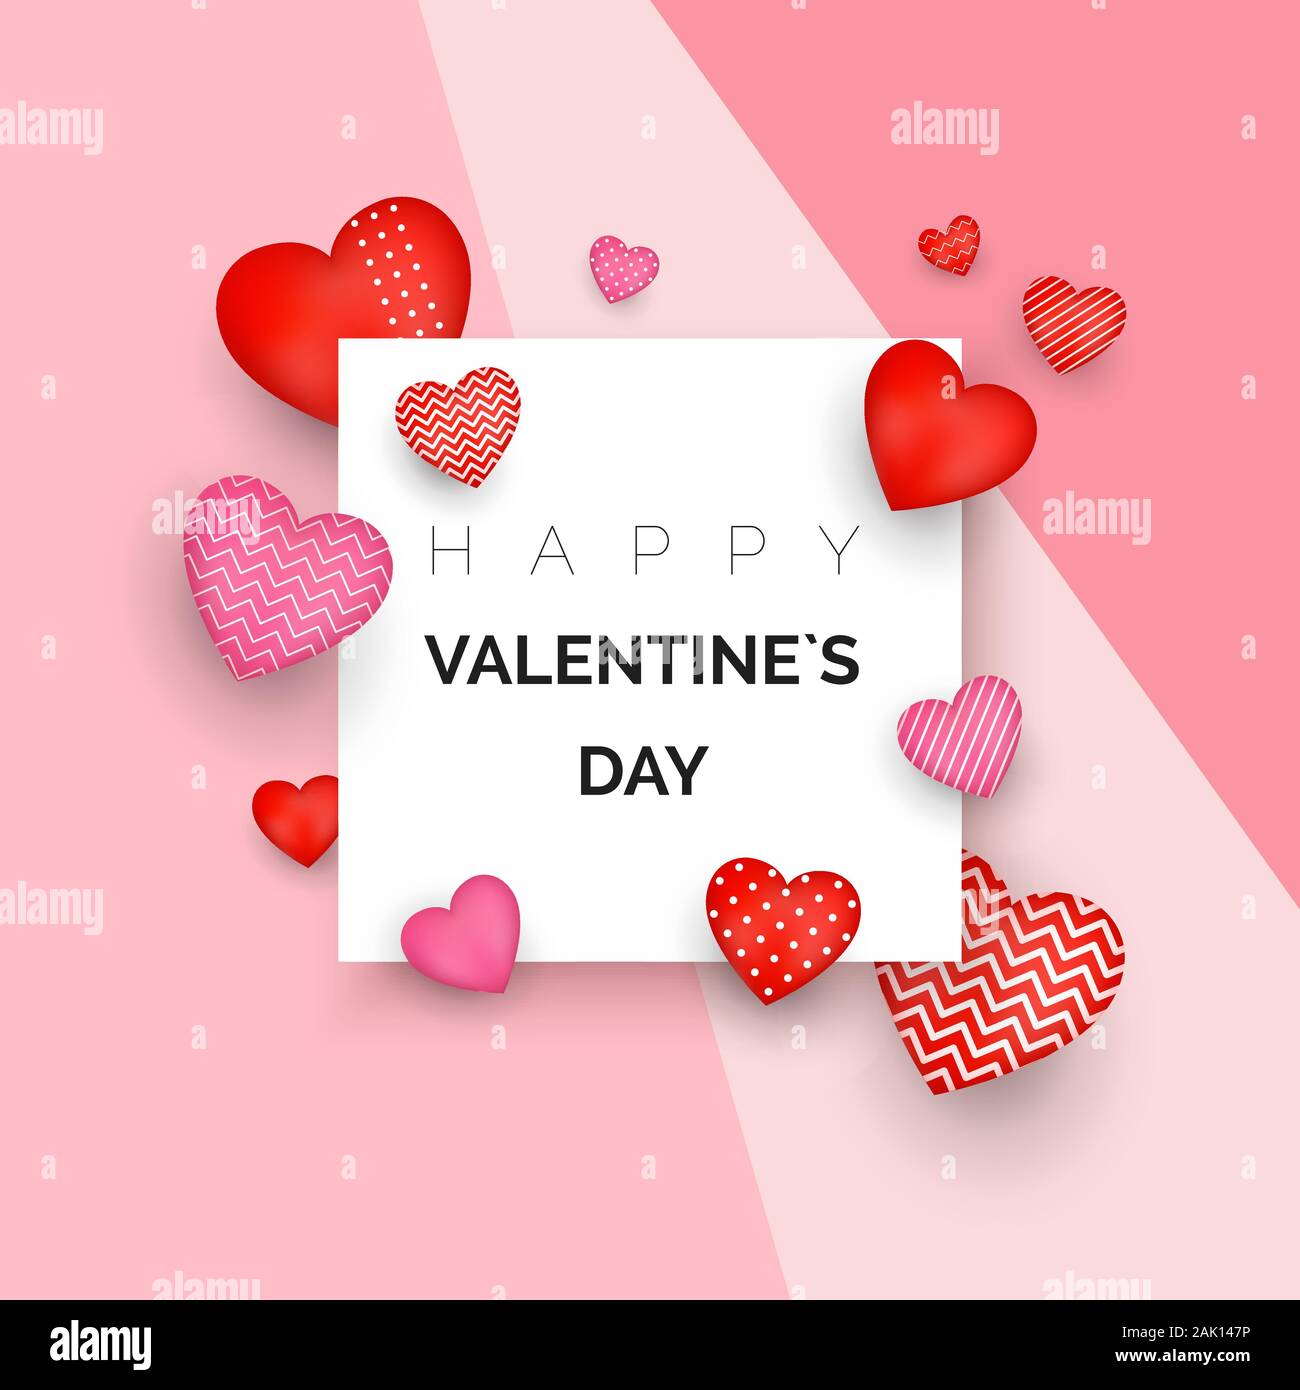 Happy Valentine's Day Grußkarte oder Einladung Design. Holiday Banner mit roten Herzen. Februar 14 Tag der Liebe und Romantik. Vector Illustration Stock Vektor